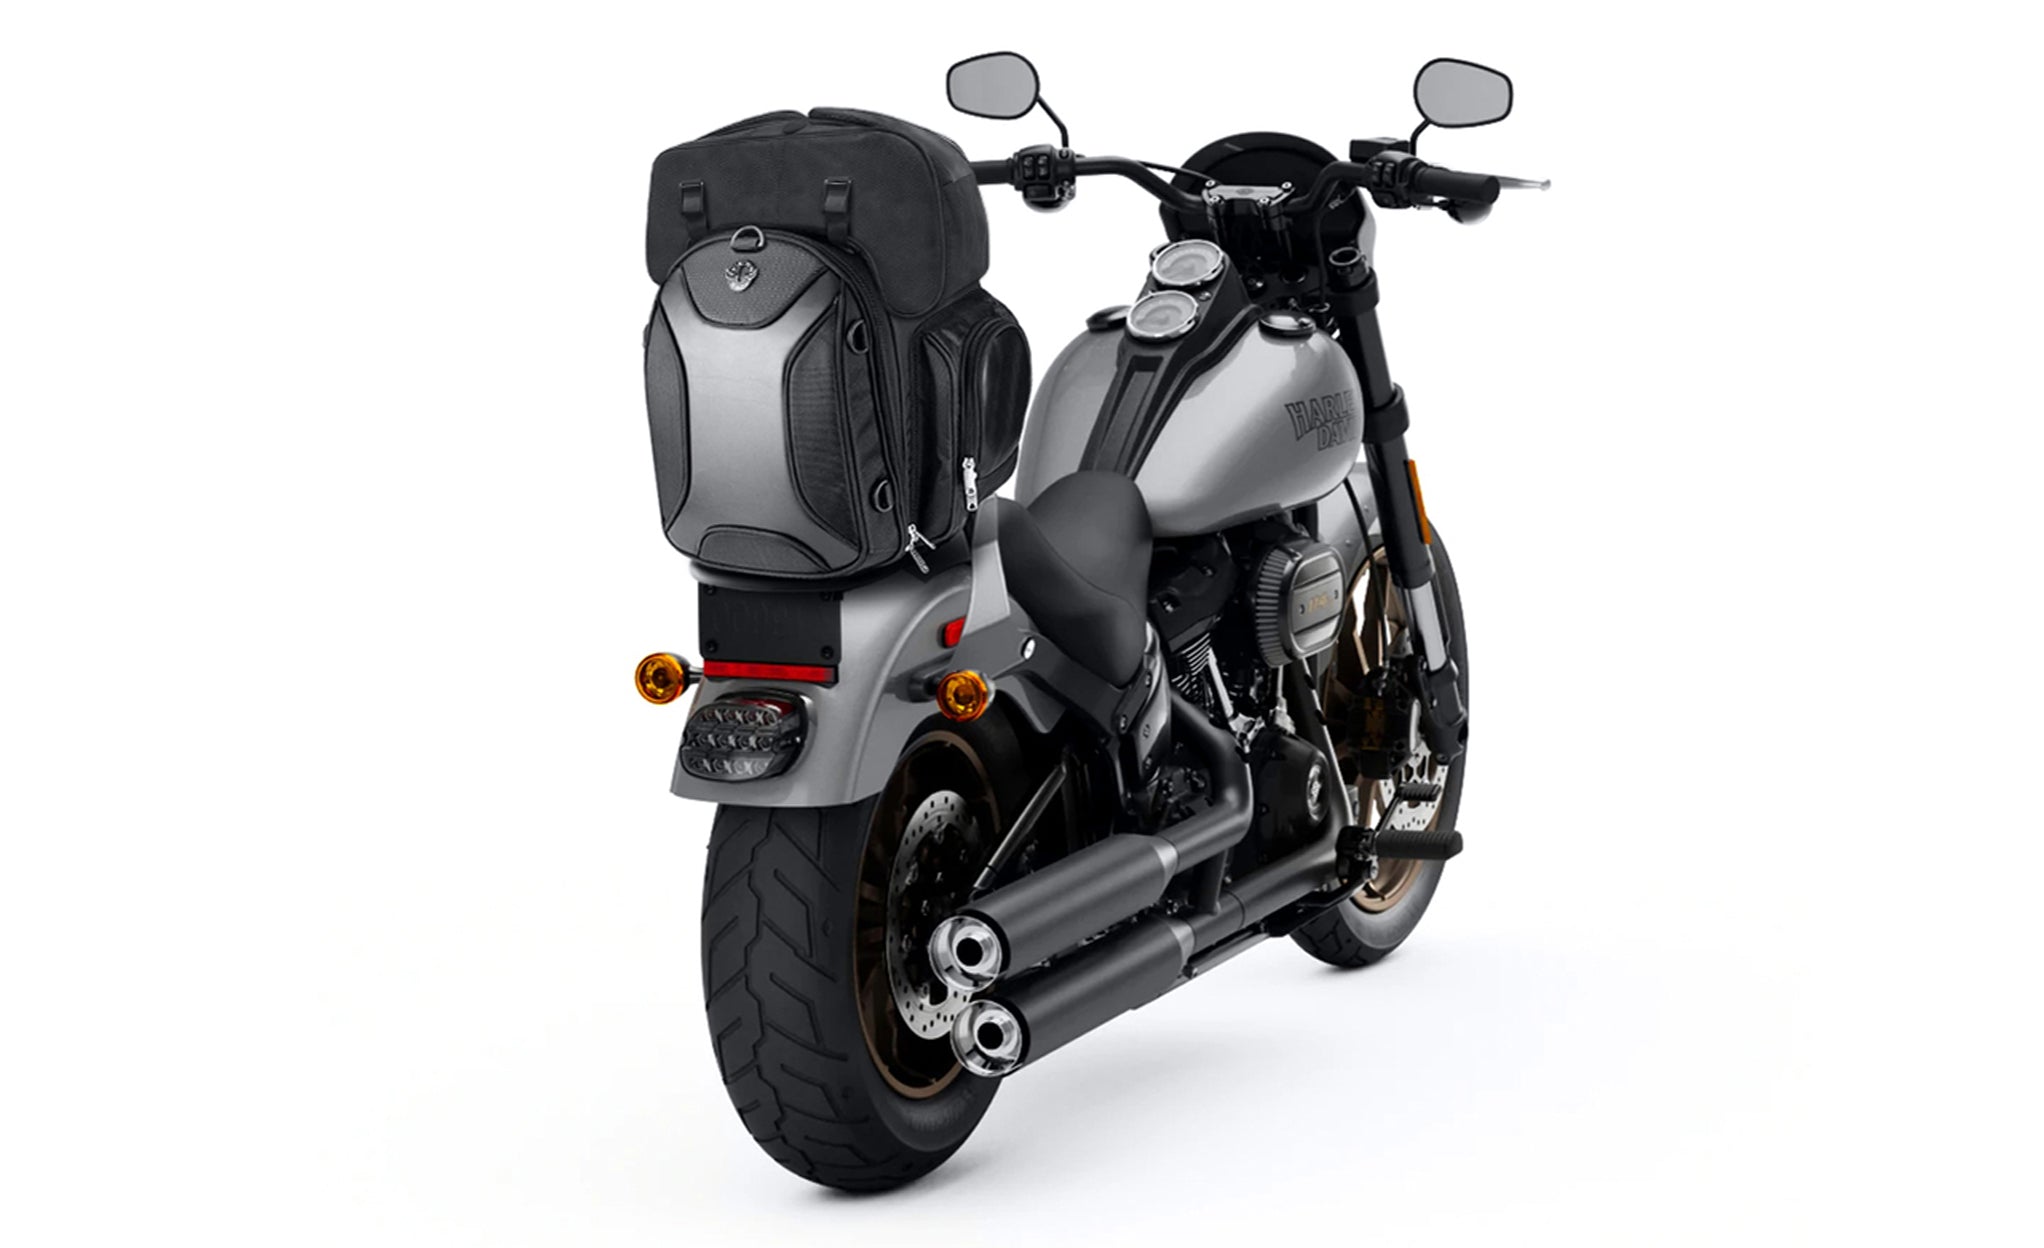 Viking Dagr Extra Large Kawasaki Motorcycle Sissy Bar Bag Bag on Bike View @expand